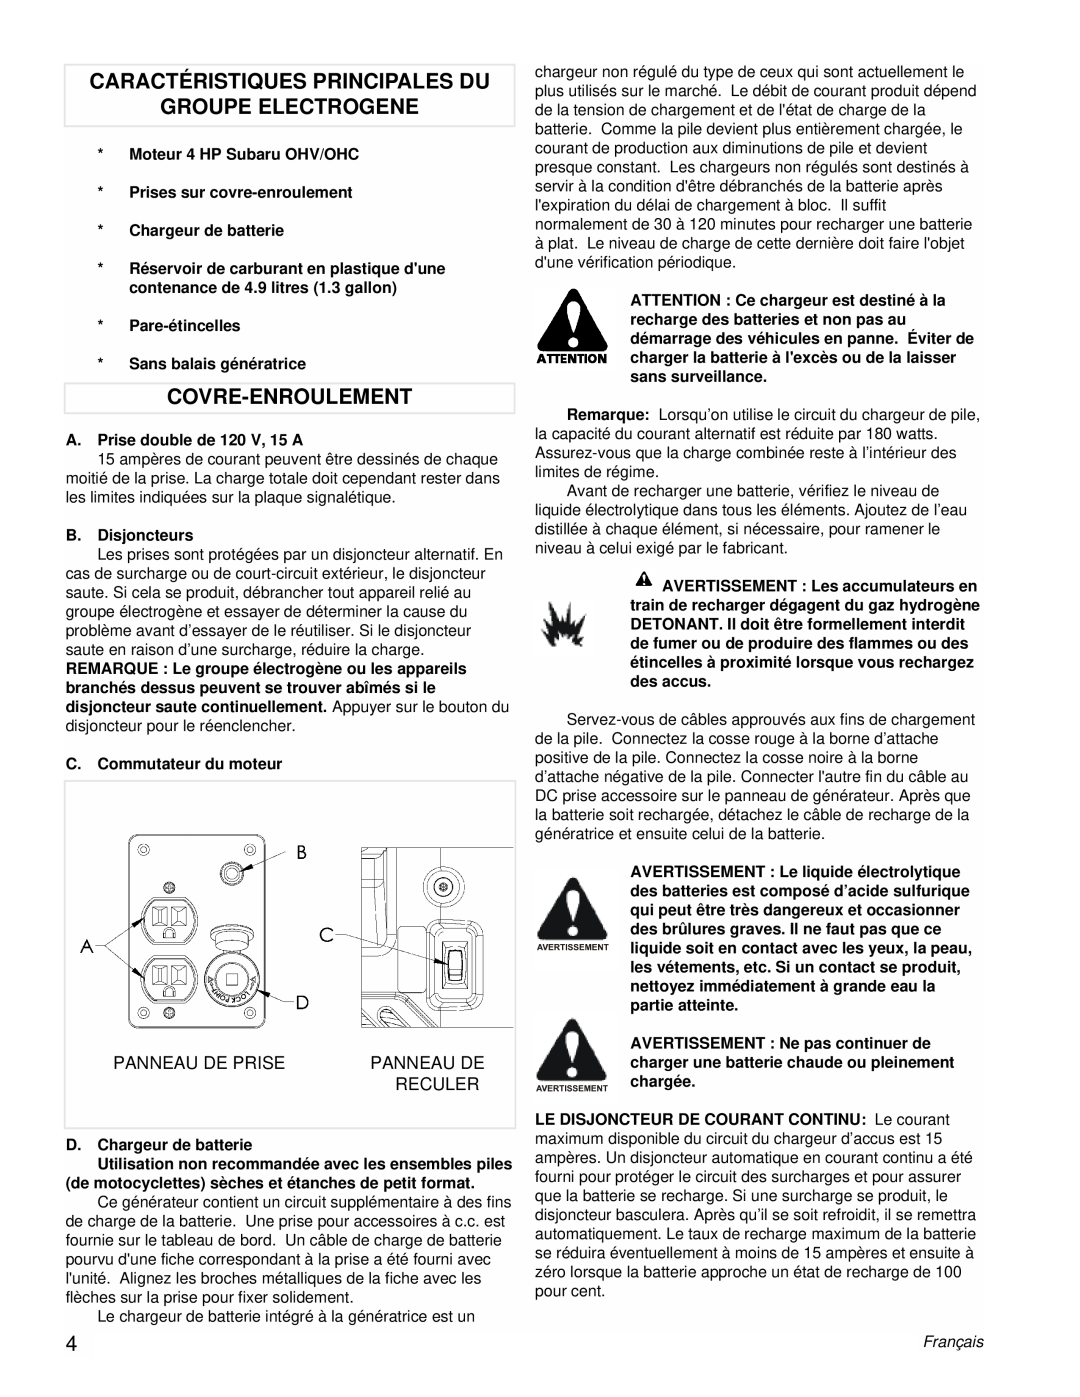 Coleman Powermate Generator manual Caractéristiques Principales Du Groupe Electrogene, Covre-Enroulement, Panneau De Prise 